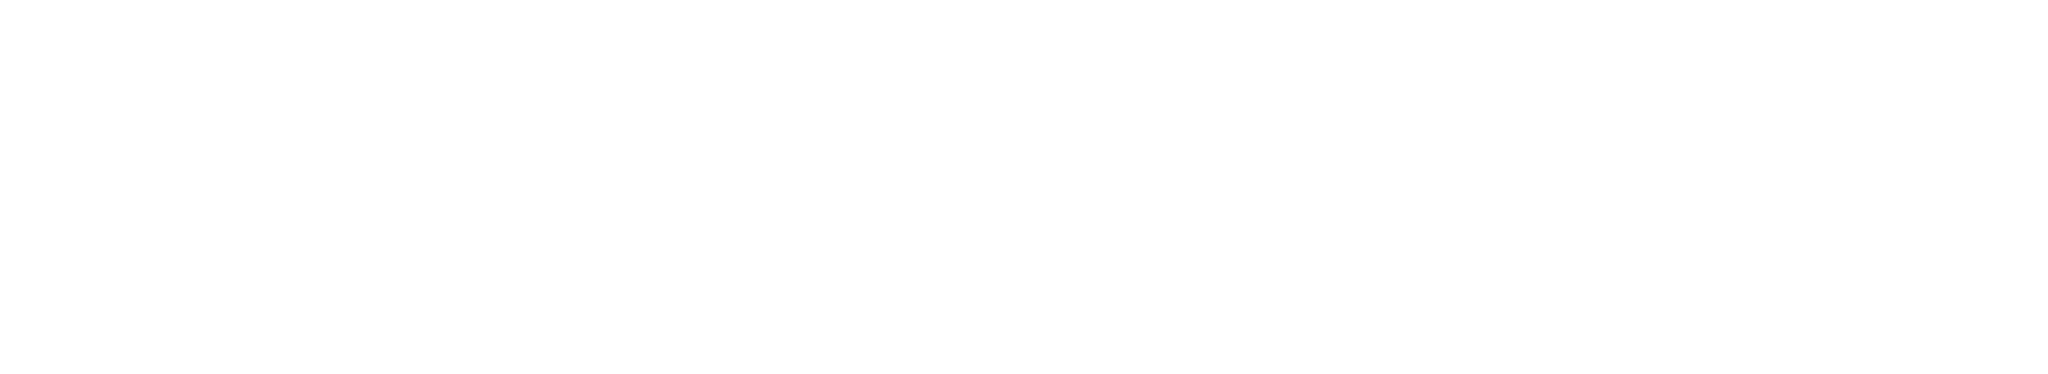 Bunting Logo-horizontal white